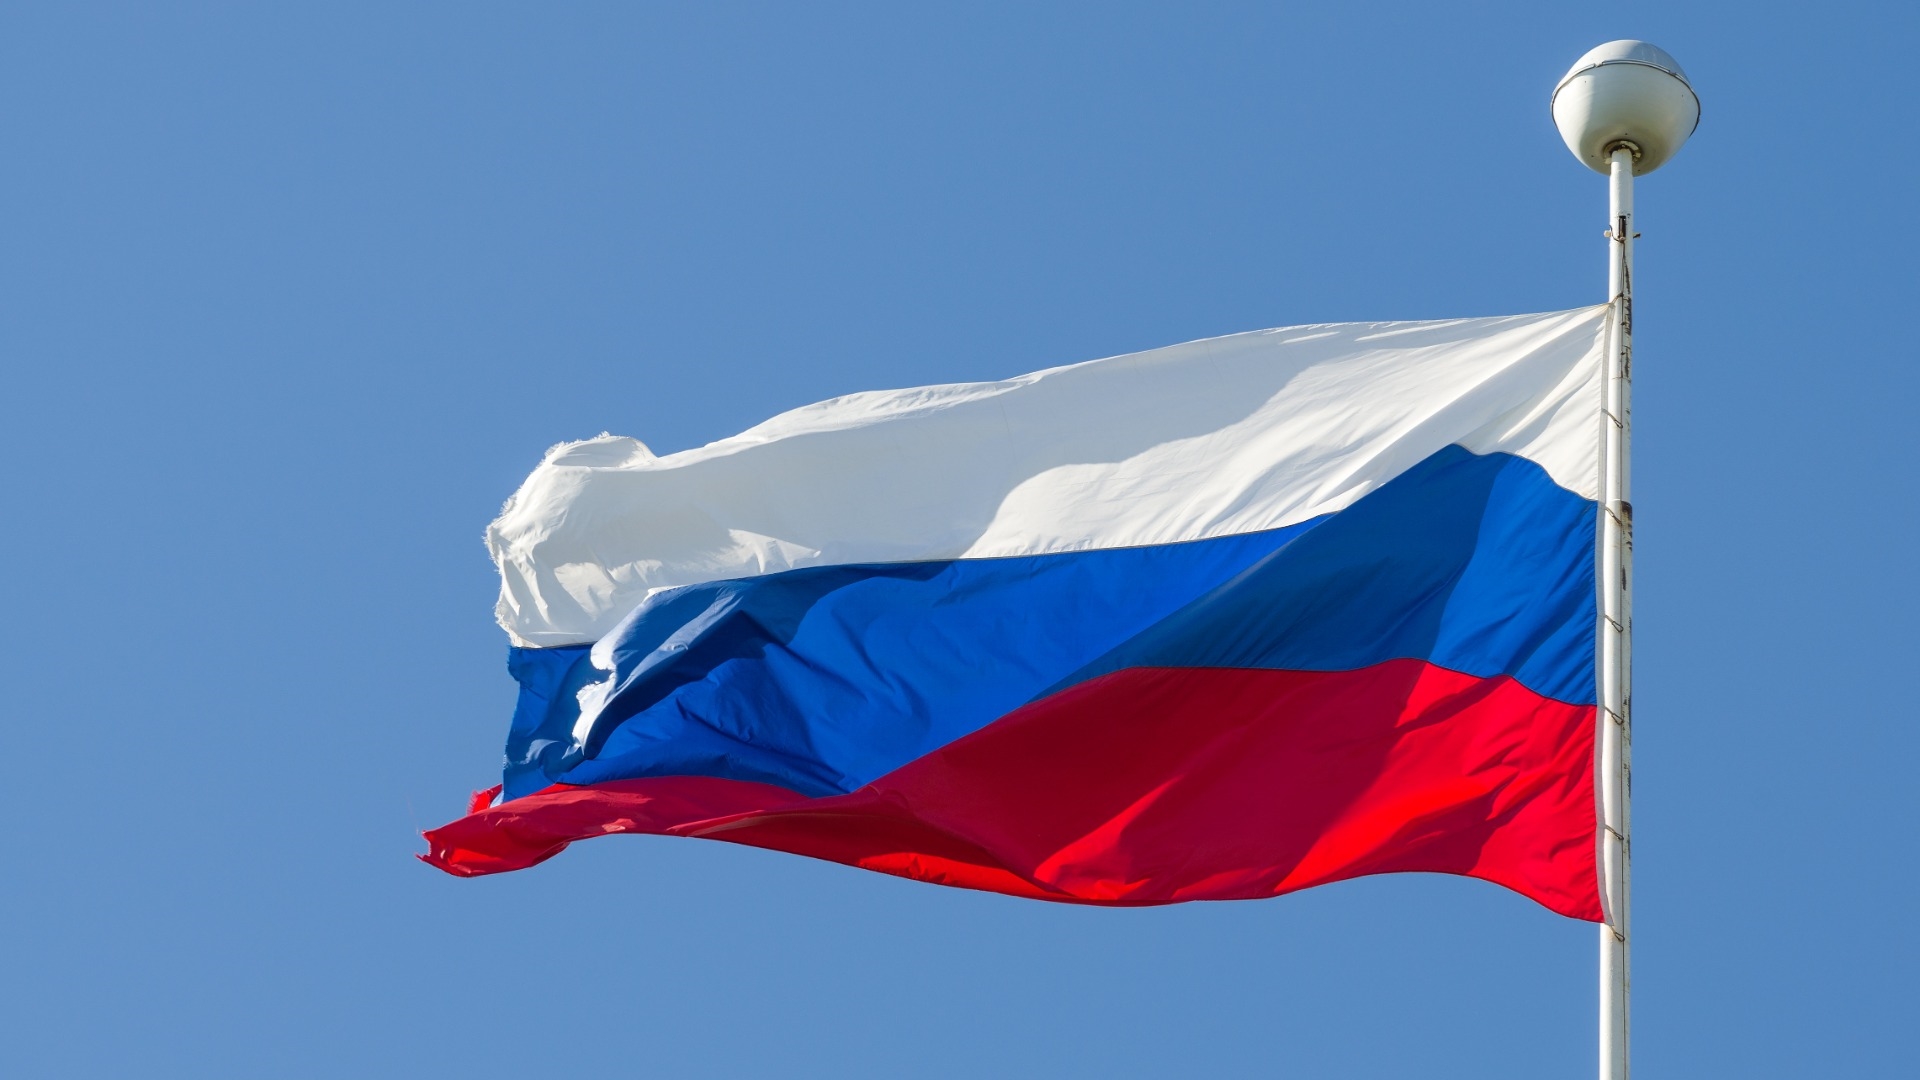 ρωσία: προειδοποιεί τη δύση με σκληρή απάντηση αν αγγίξει τα περιουσικά της στοιχεία που έχουν παγώσ